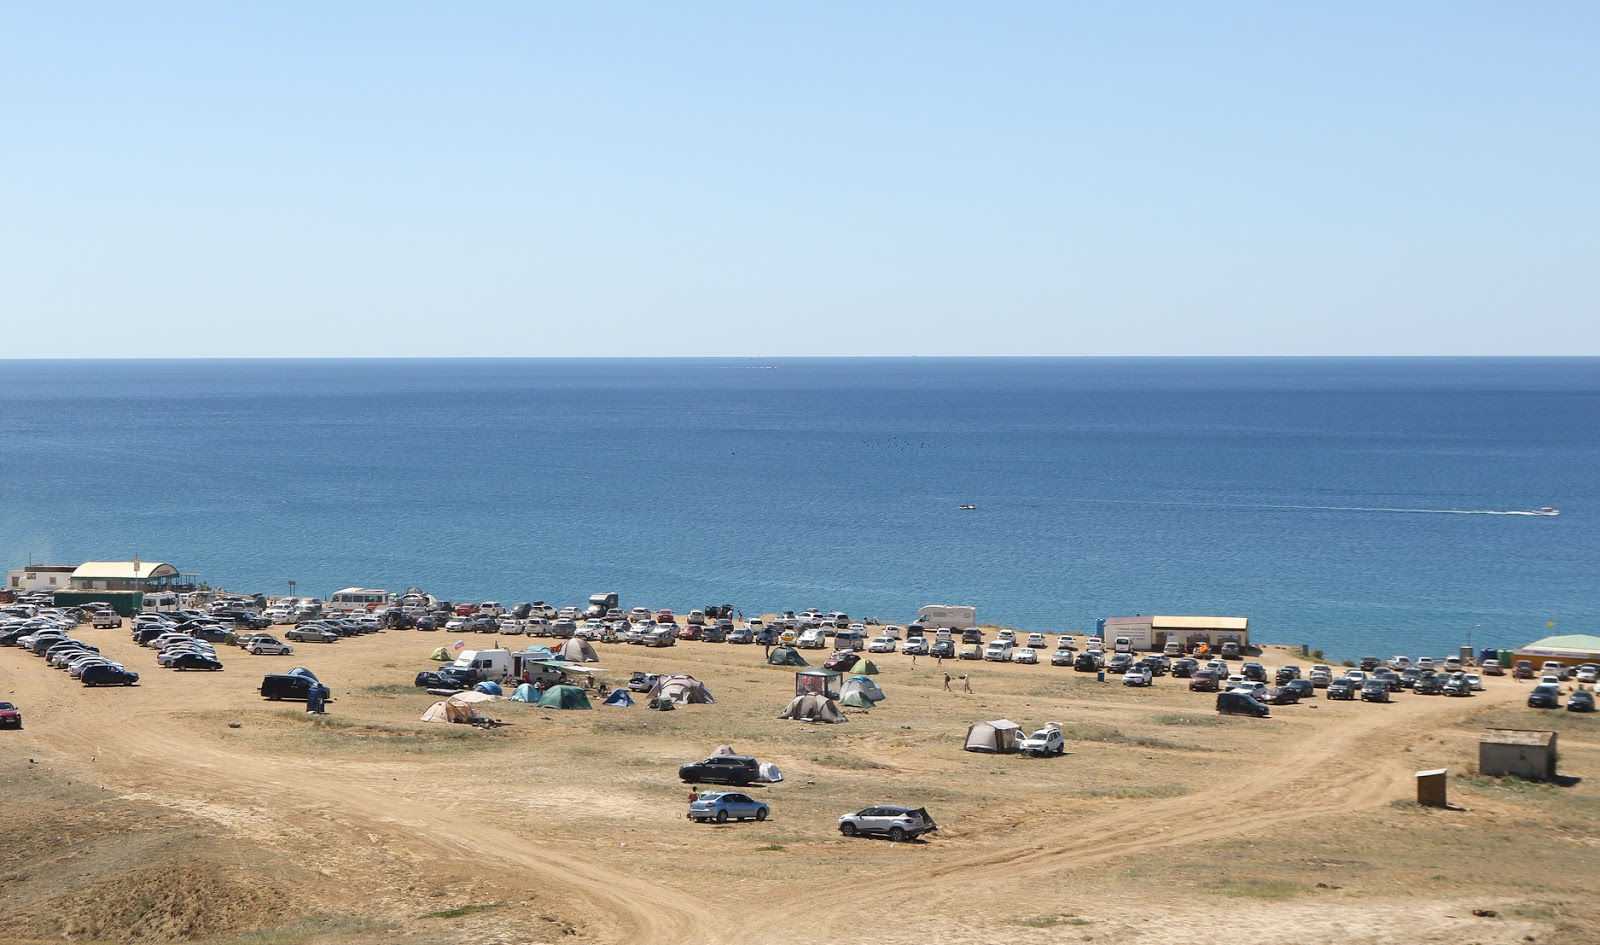 Kassiopeya Plazh'in fotoğrafı geniş plaj ile birlikte